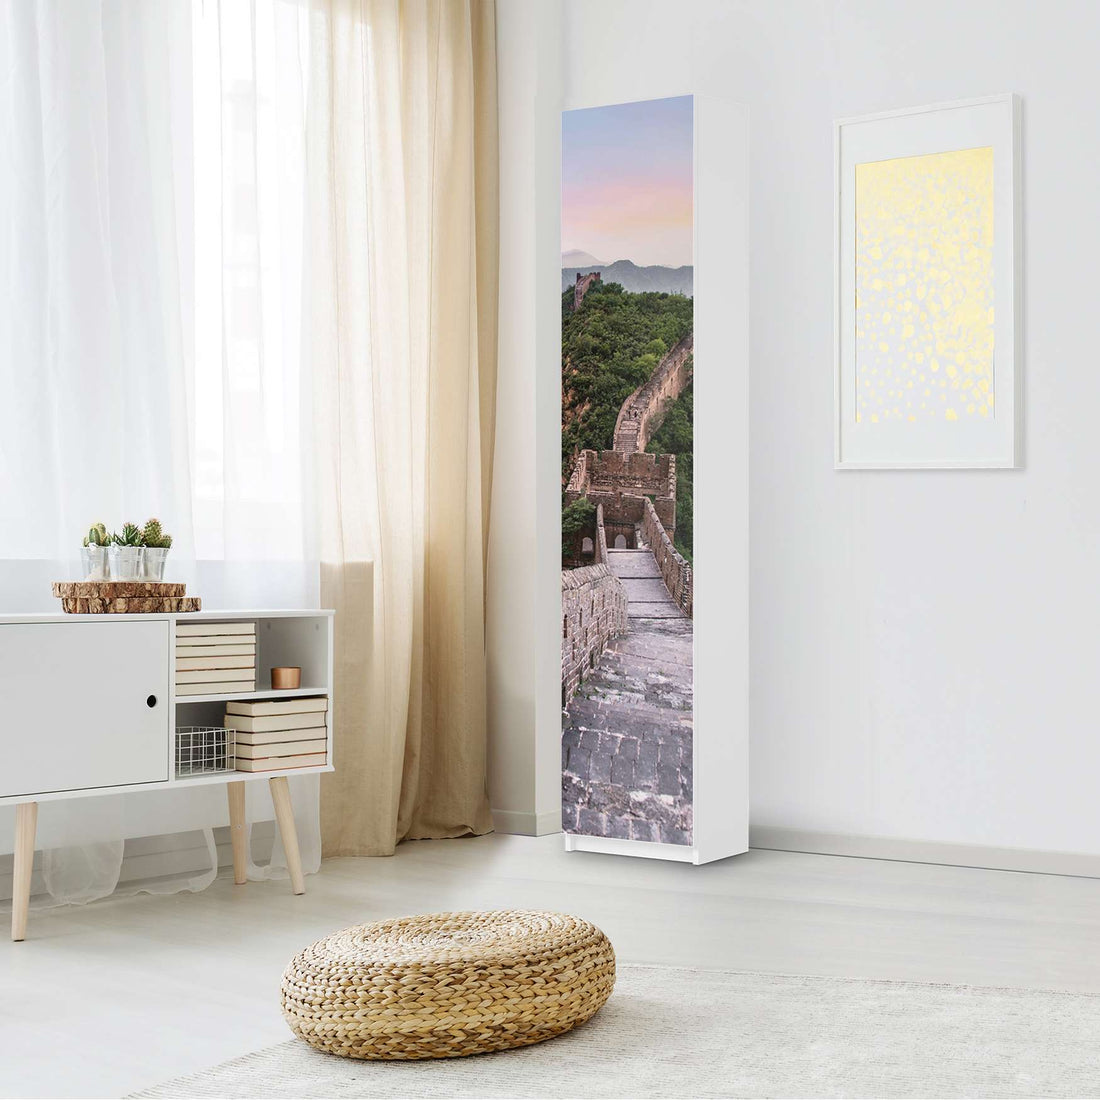 Klebefolie The Great Wall - IKEA Pax Schrank 236 cm Höhe - 1 Tür - Schlafzimmer